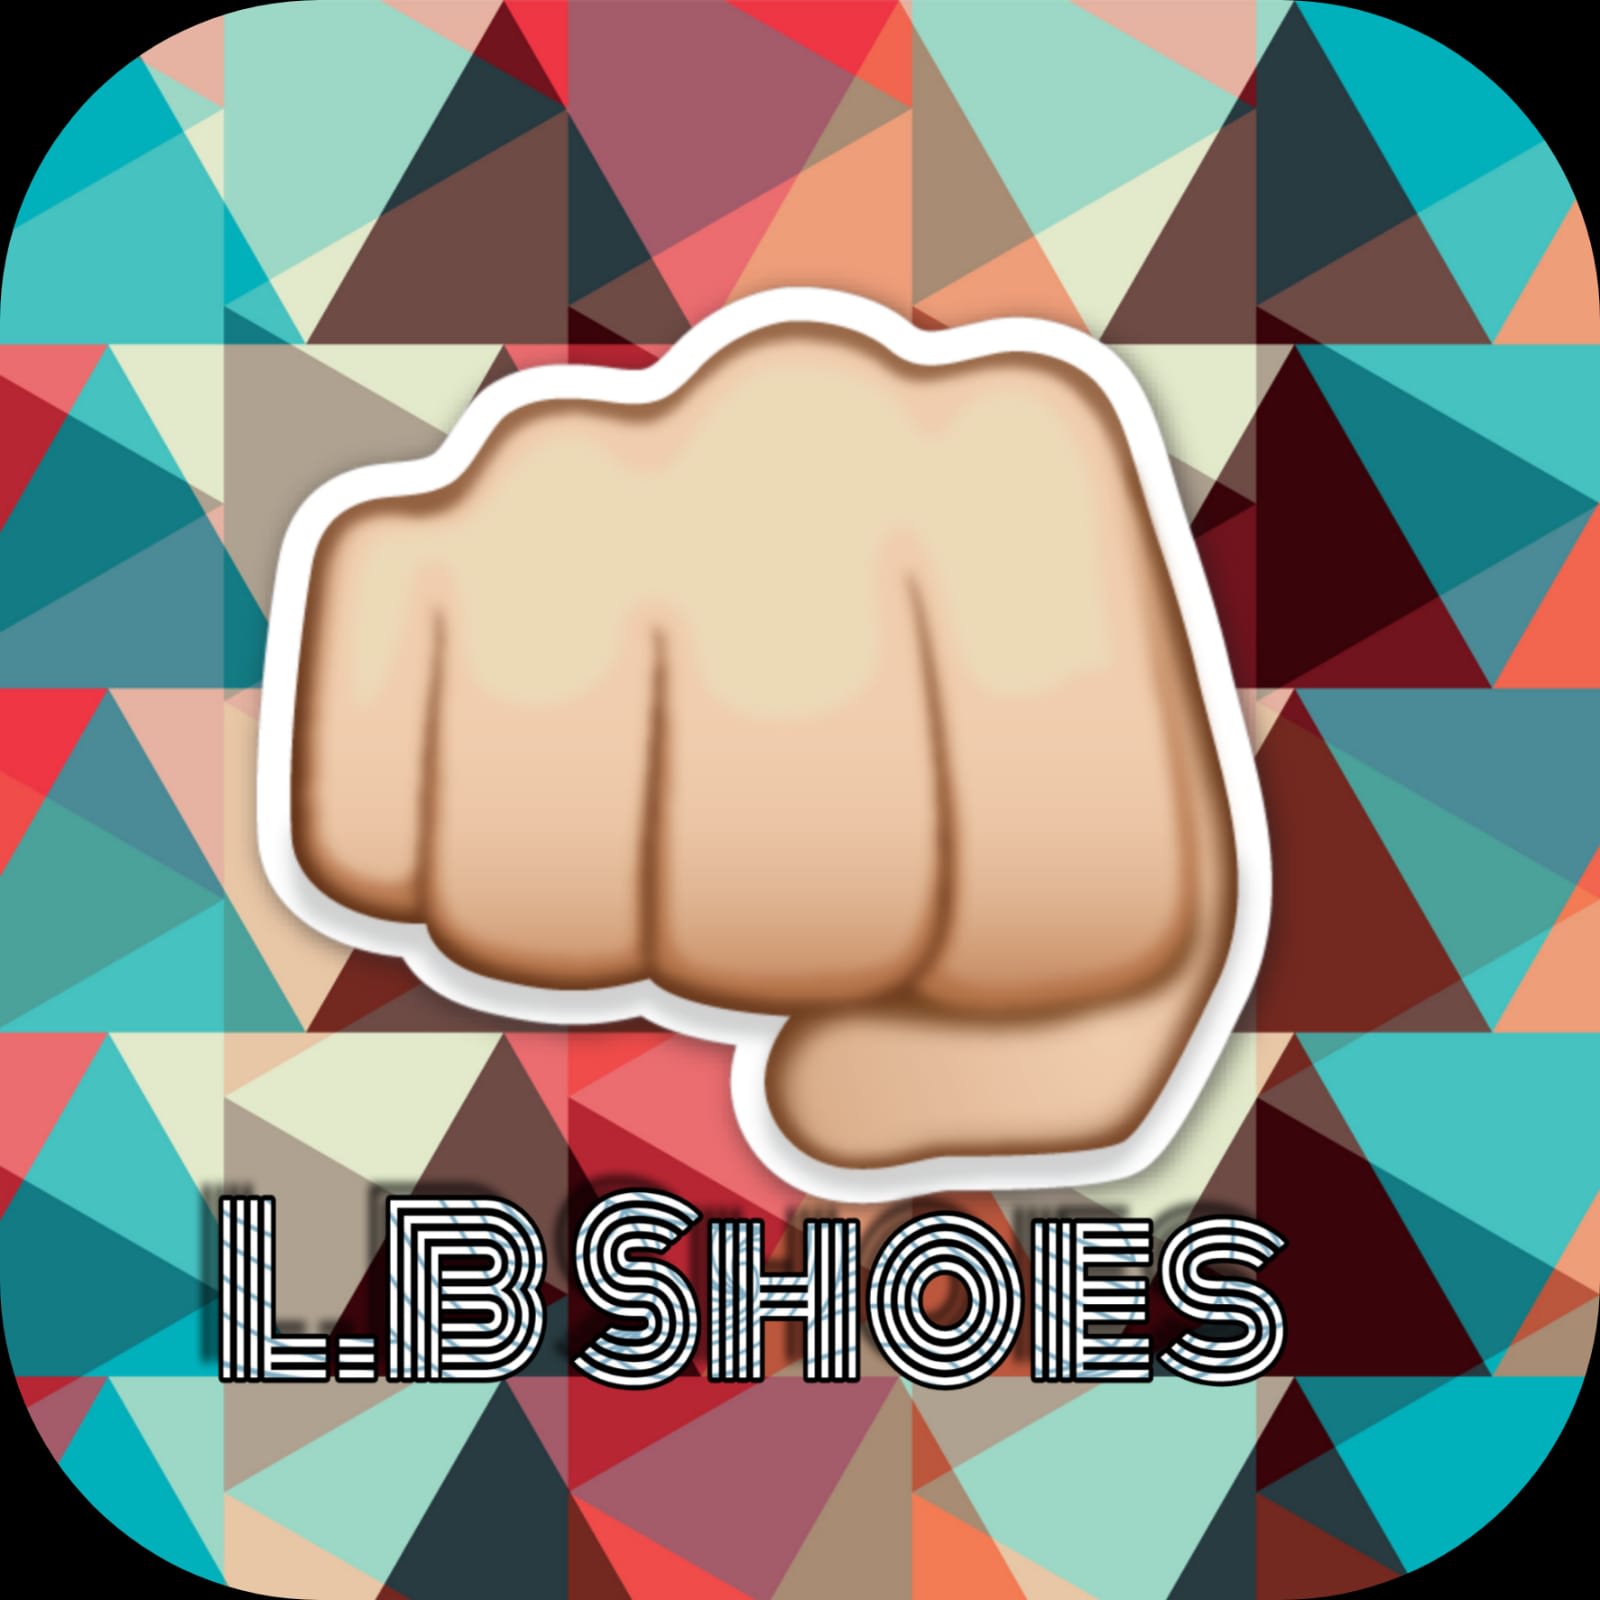 L.B Shoes